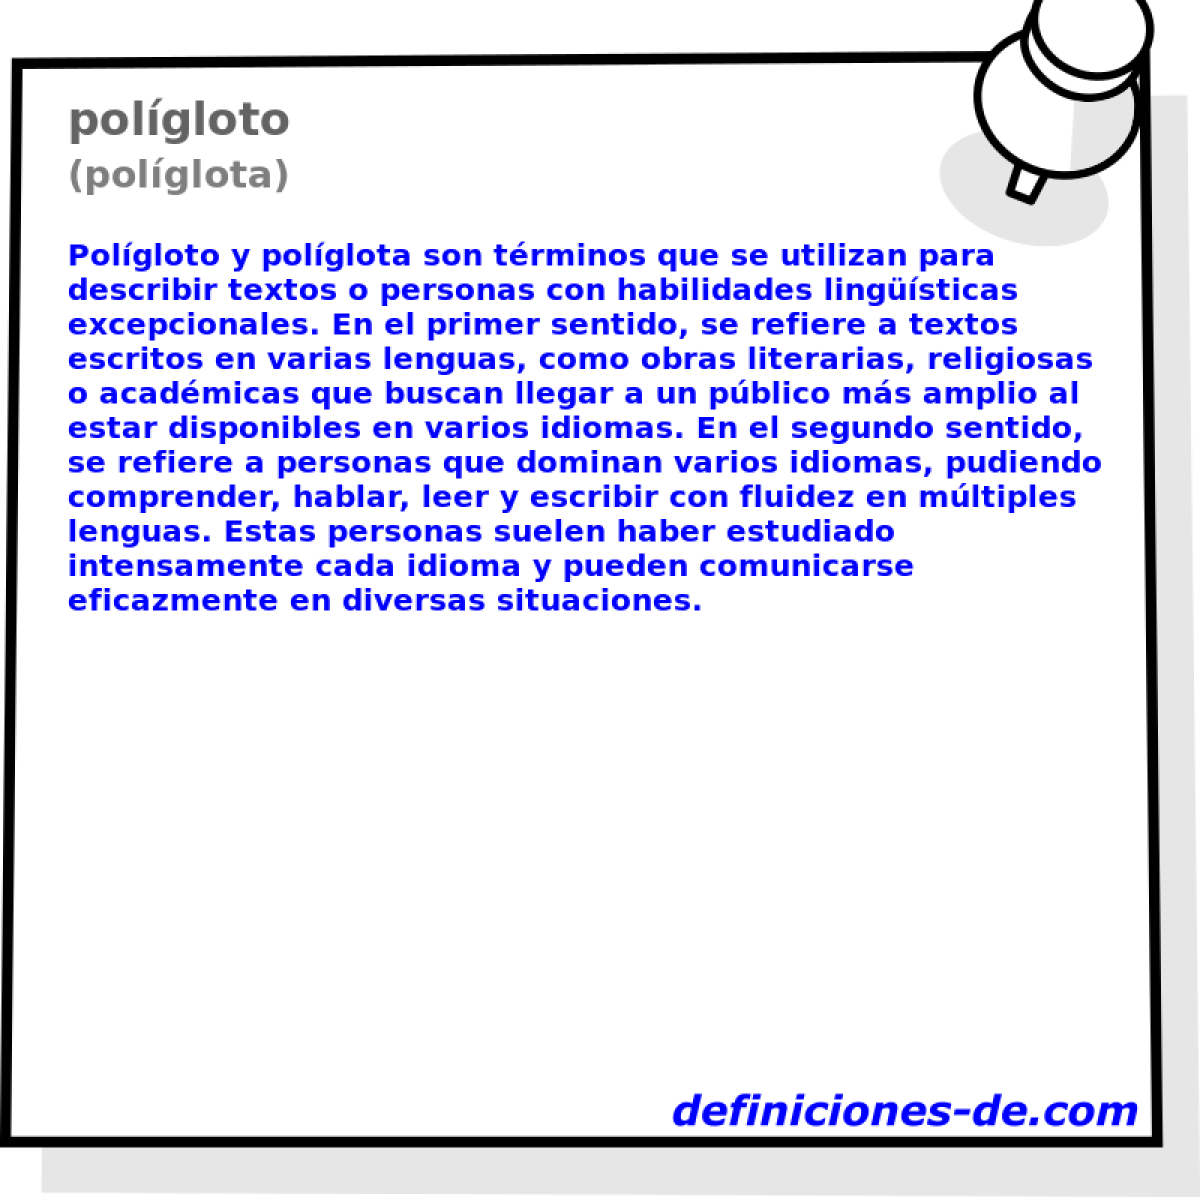 polgloto (polglota)